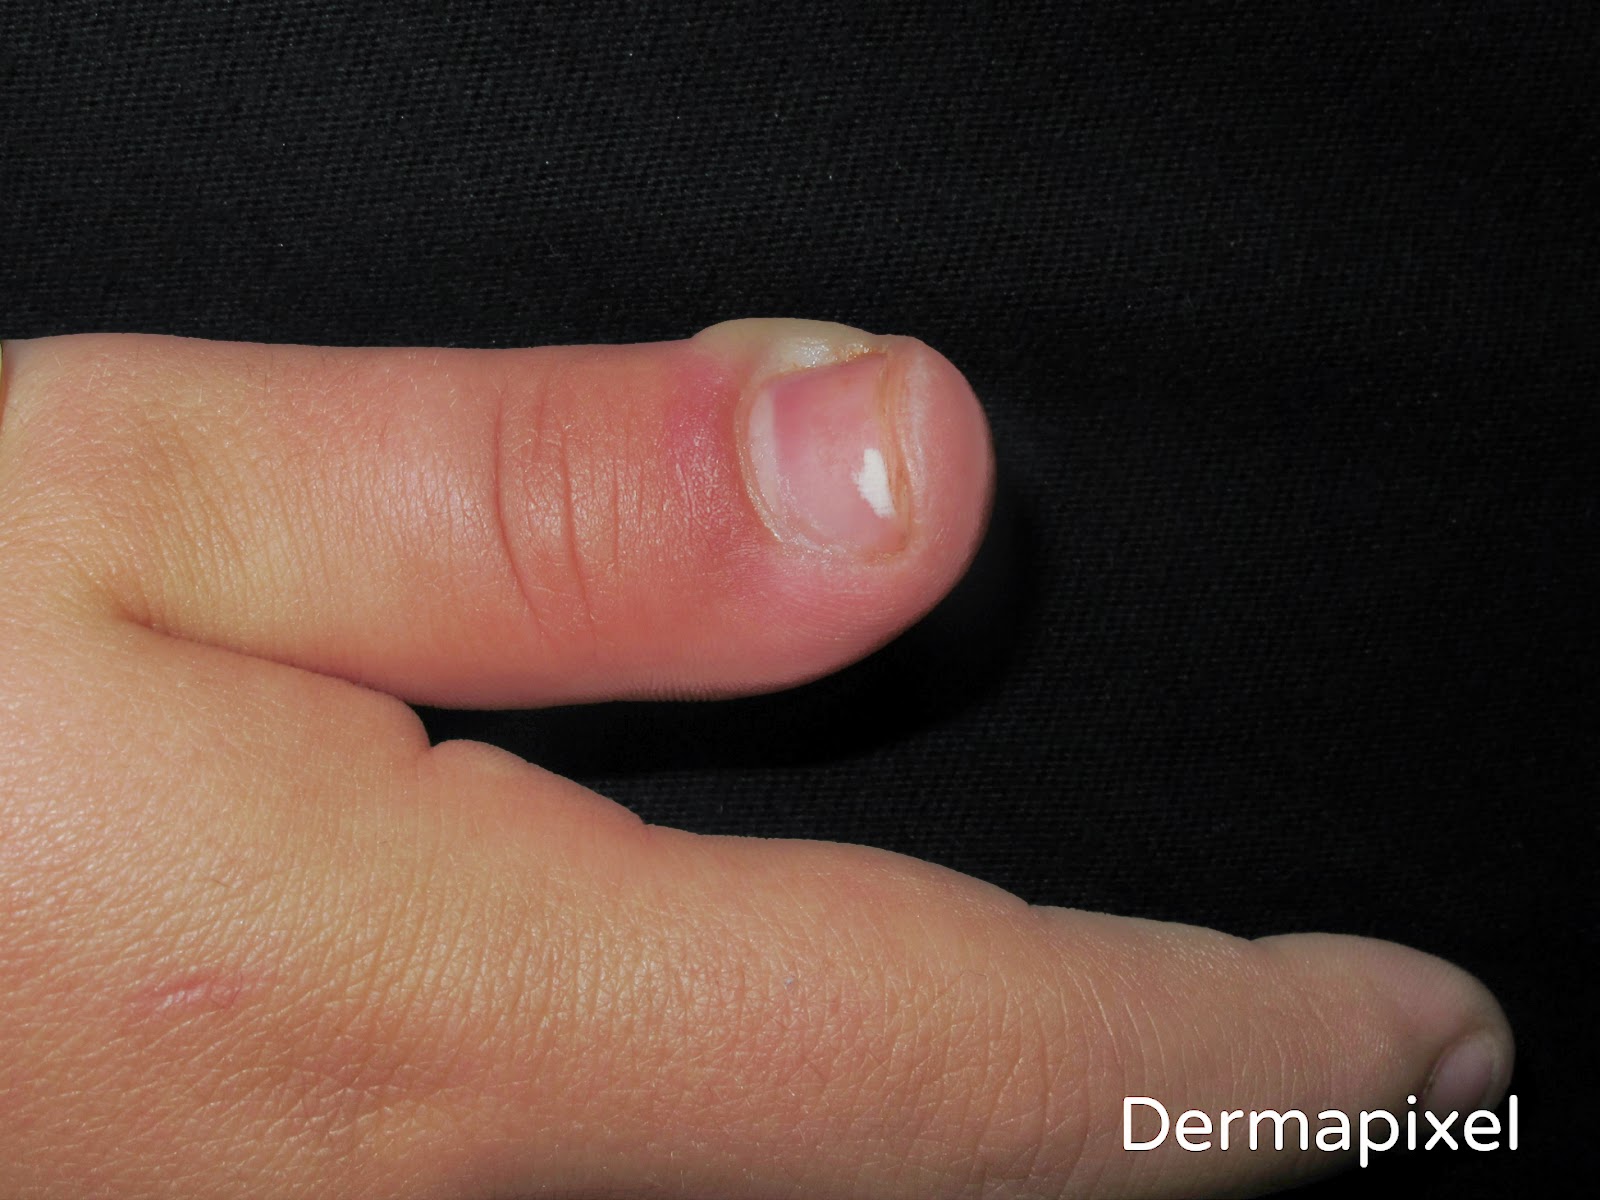 Dermapixel: Me duele el dedo